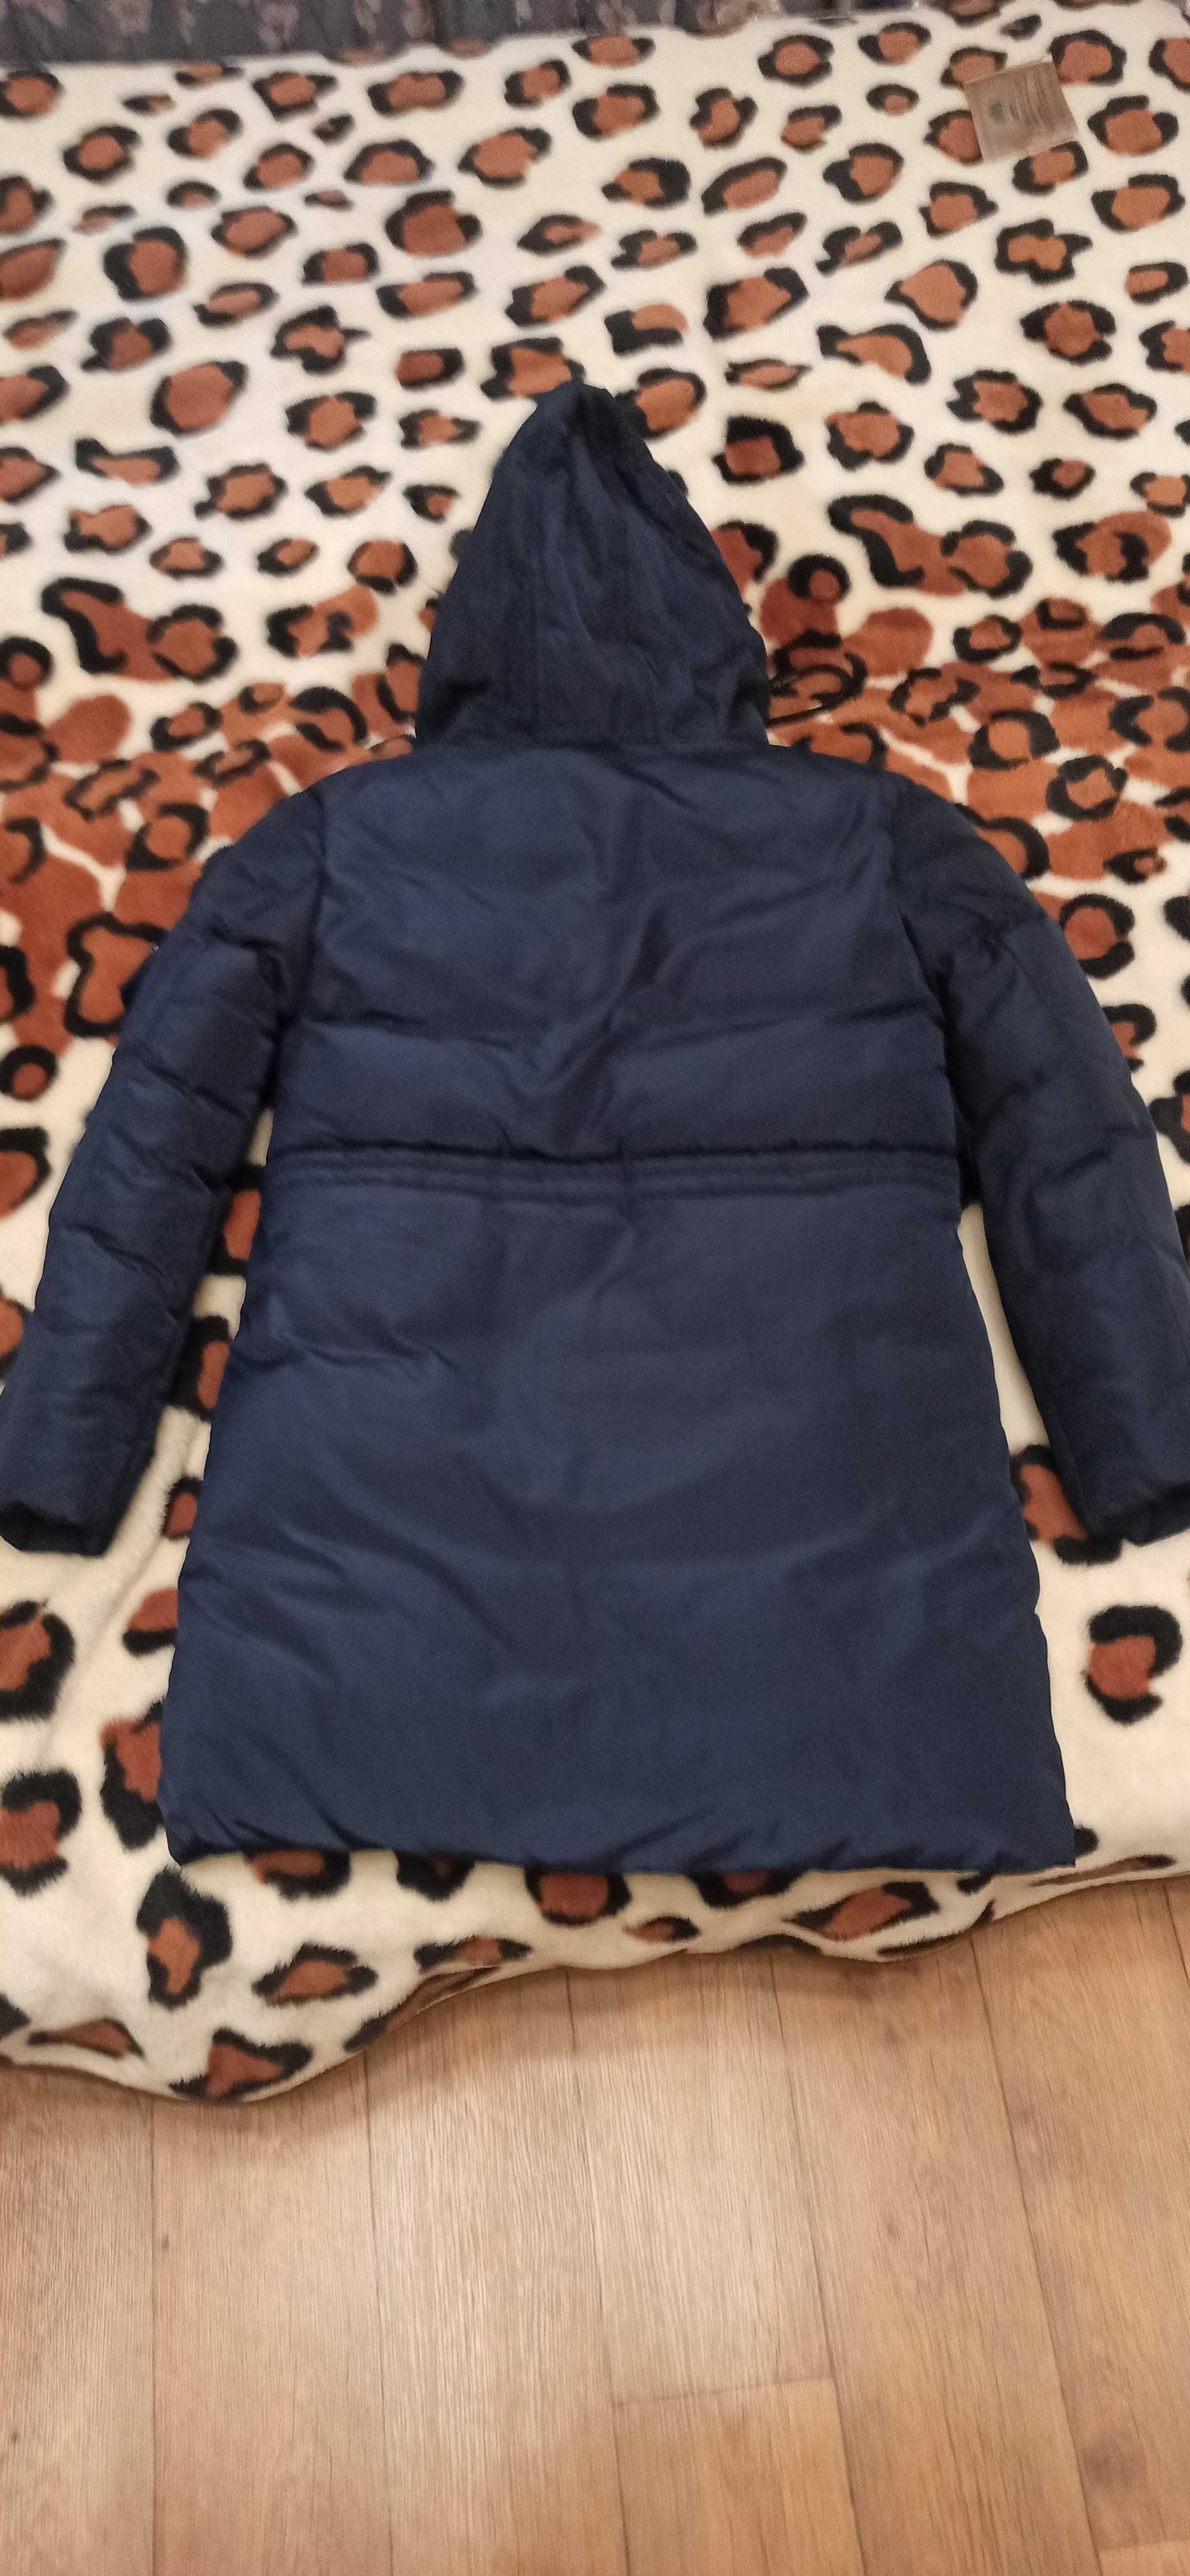 Куртка зимняя теплая (на мальчика 8-10 лет).